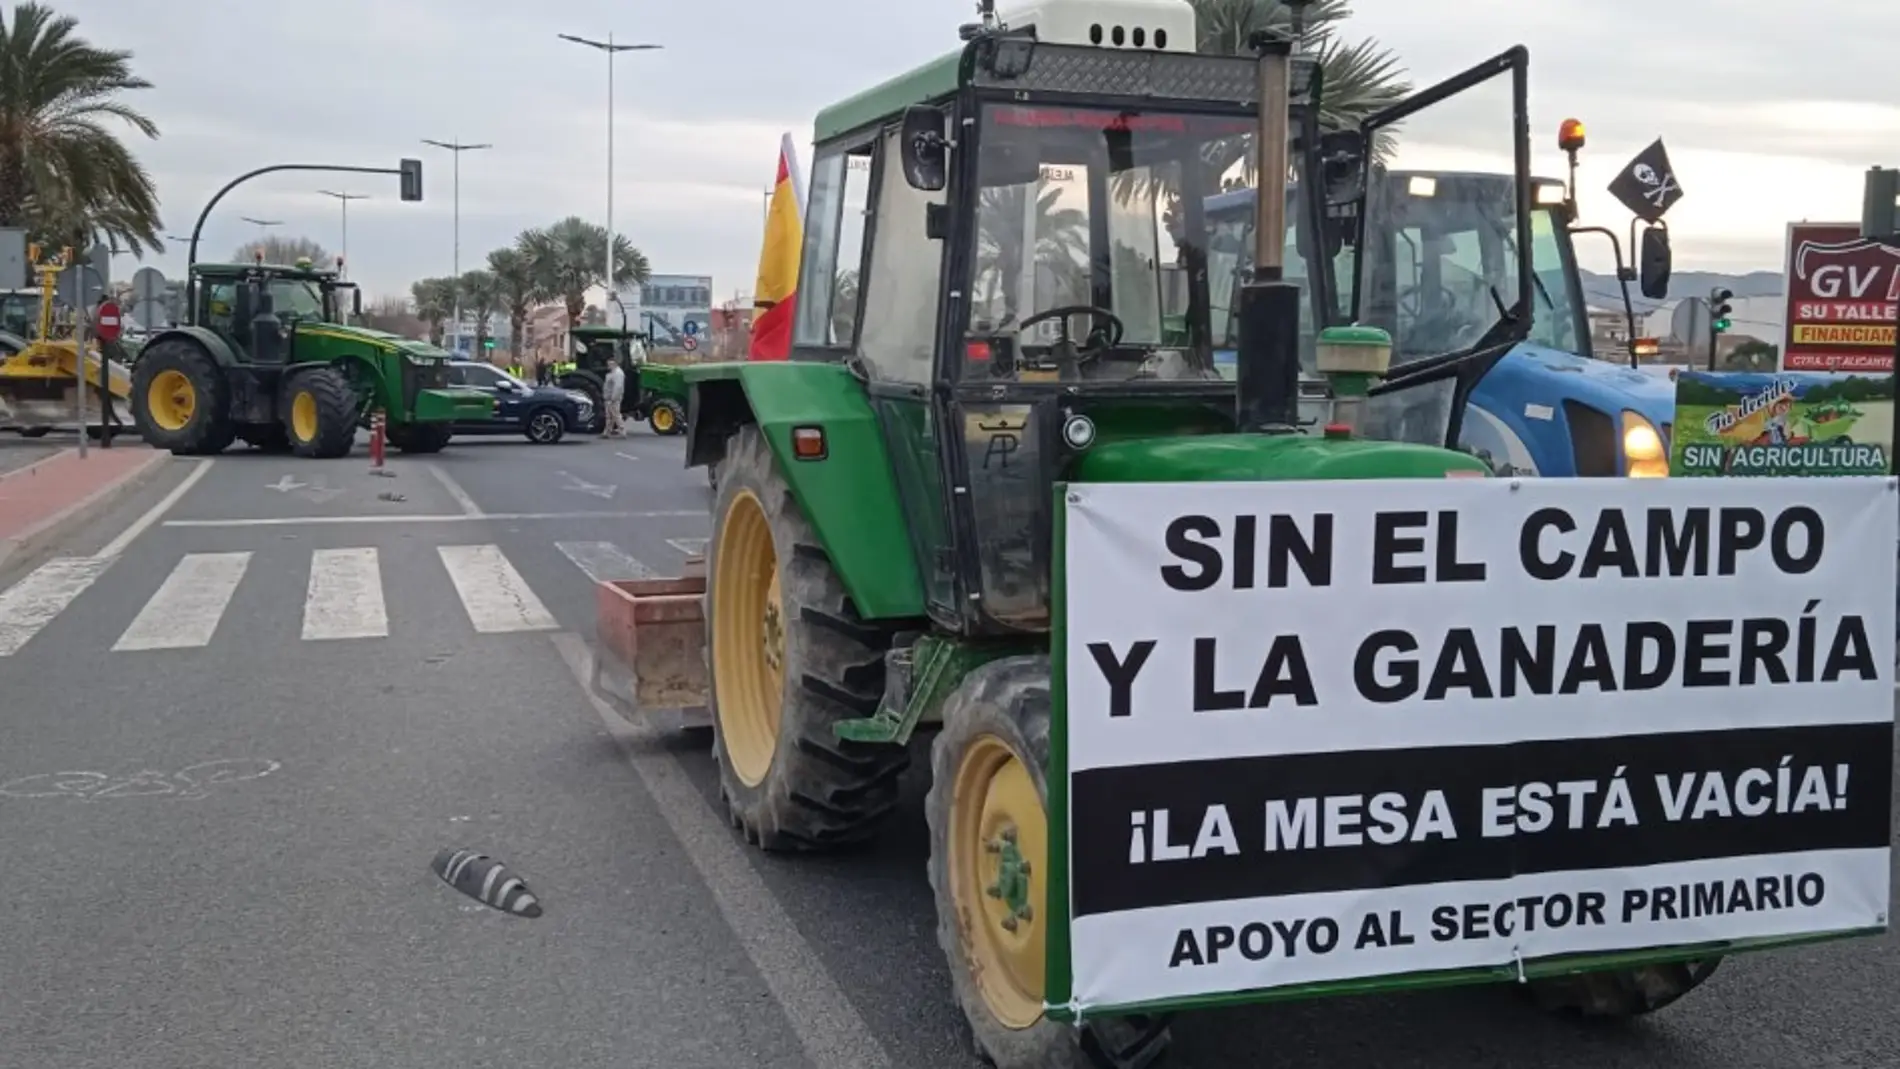 Mobilizacións agrarias conxuntas en 8 vilas e cidades galegas